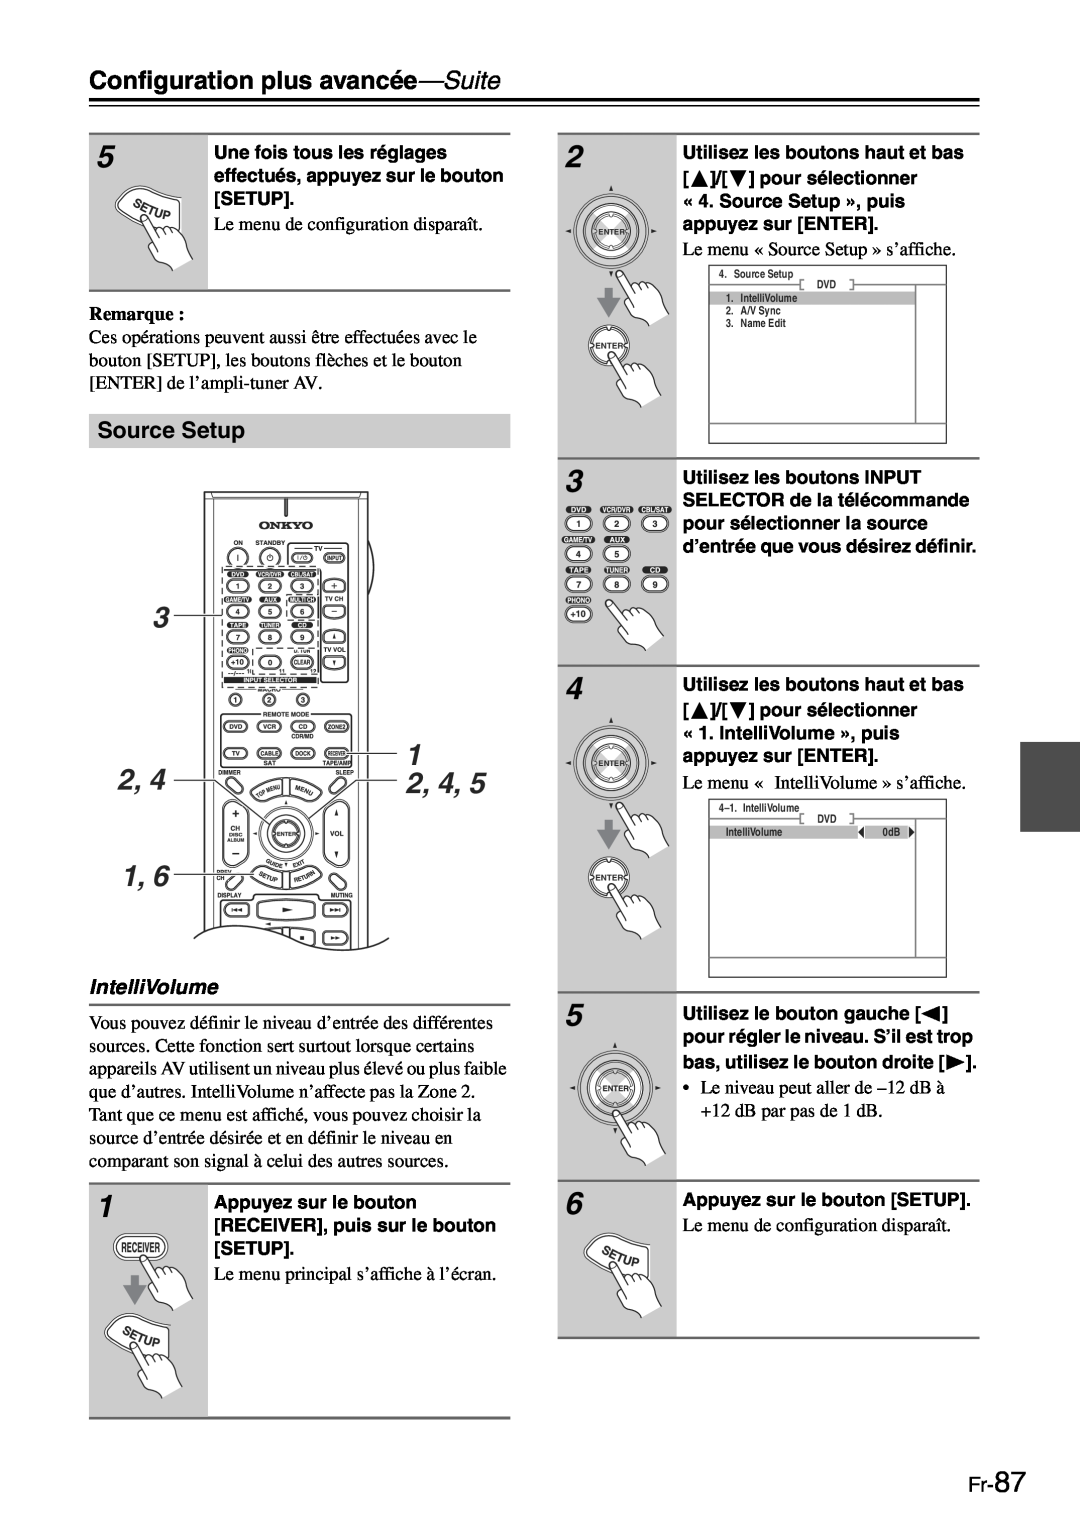 Onkyo TX-SR705 manual 2, 4, Source Setup, IntelliVolume, Fr-87, Configuration plus avancée—Suite, Remarque 